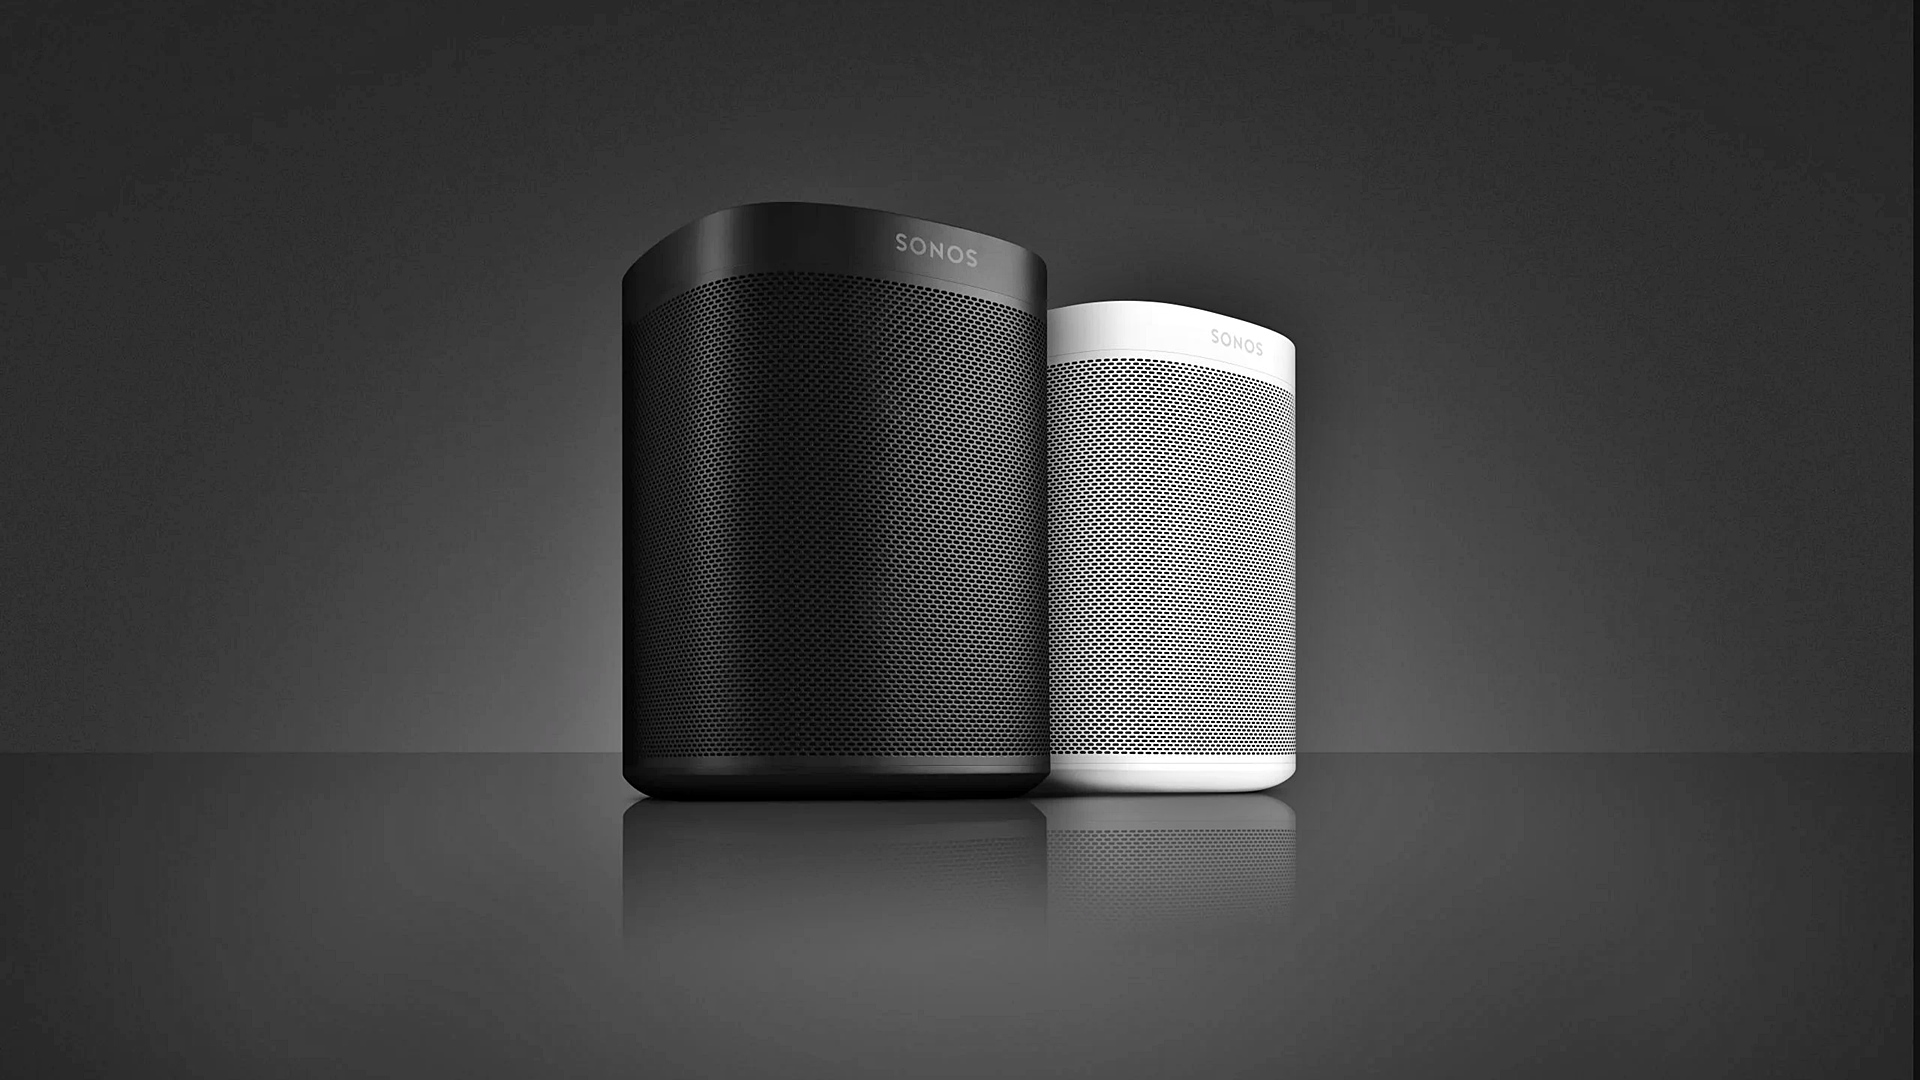 Sonos sẽ ra mắt mẫu loa hoàn toàn mới mang tên Era 300 và Era 100, cạnh tranh Apple, Google...